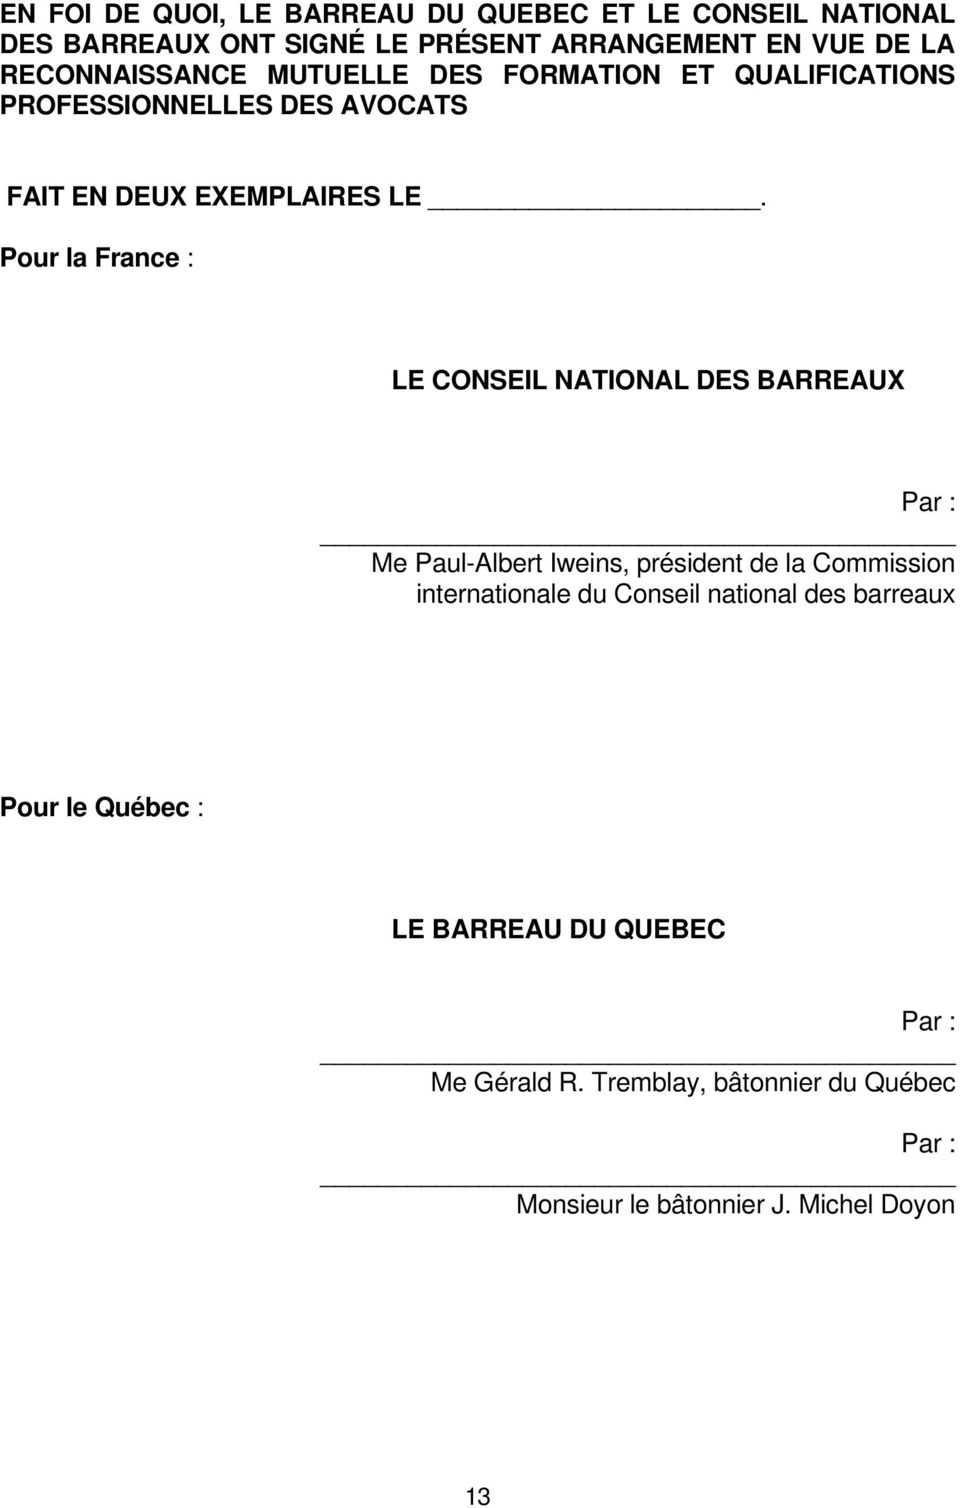 Pour la France : LE CONSEIL NATIONAL DES BARREAUX Par : Me Paul-Albert Iweins, président de la Commission internationale du